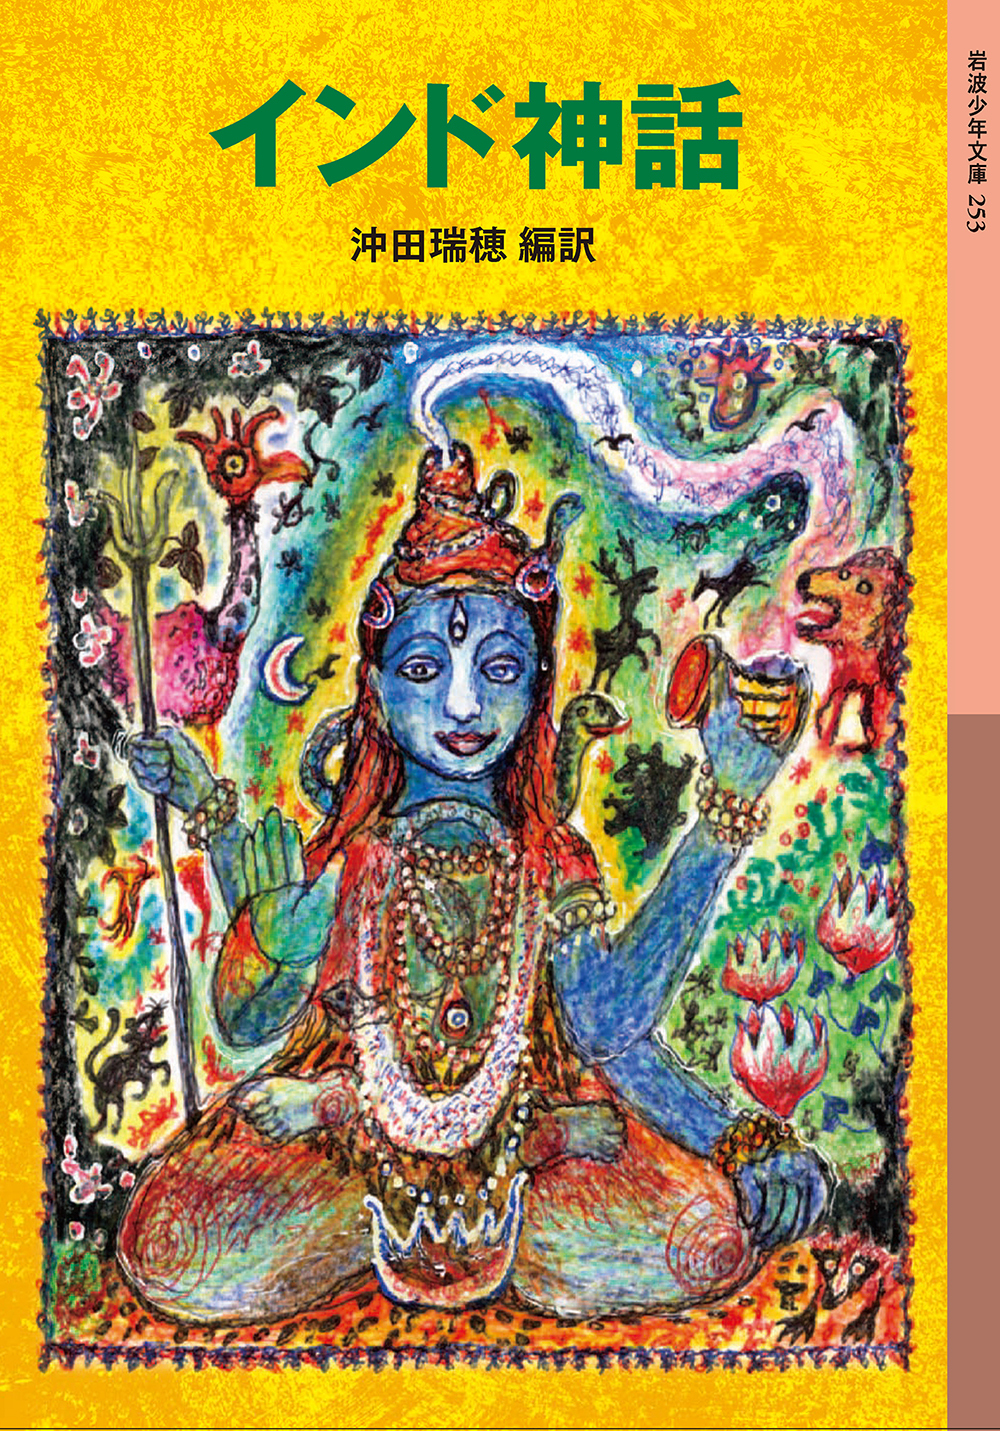 インド神話の商品画像